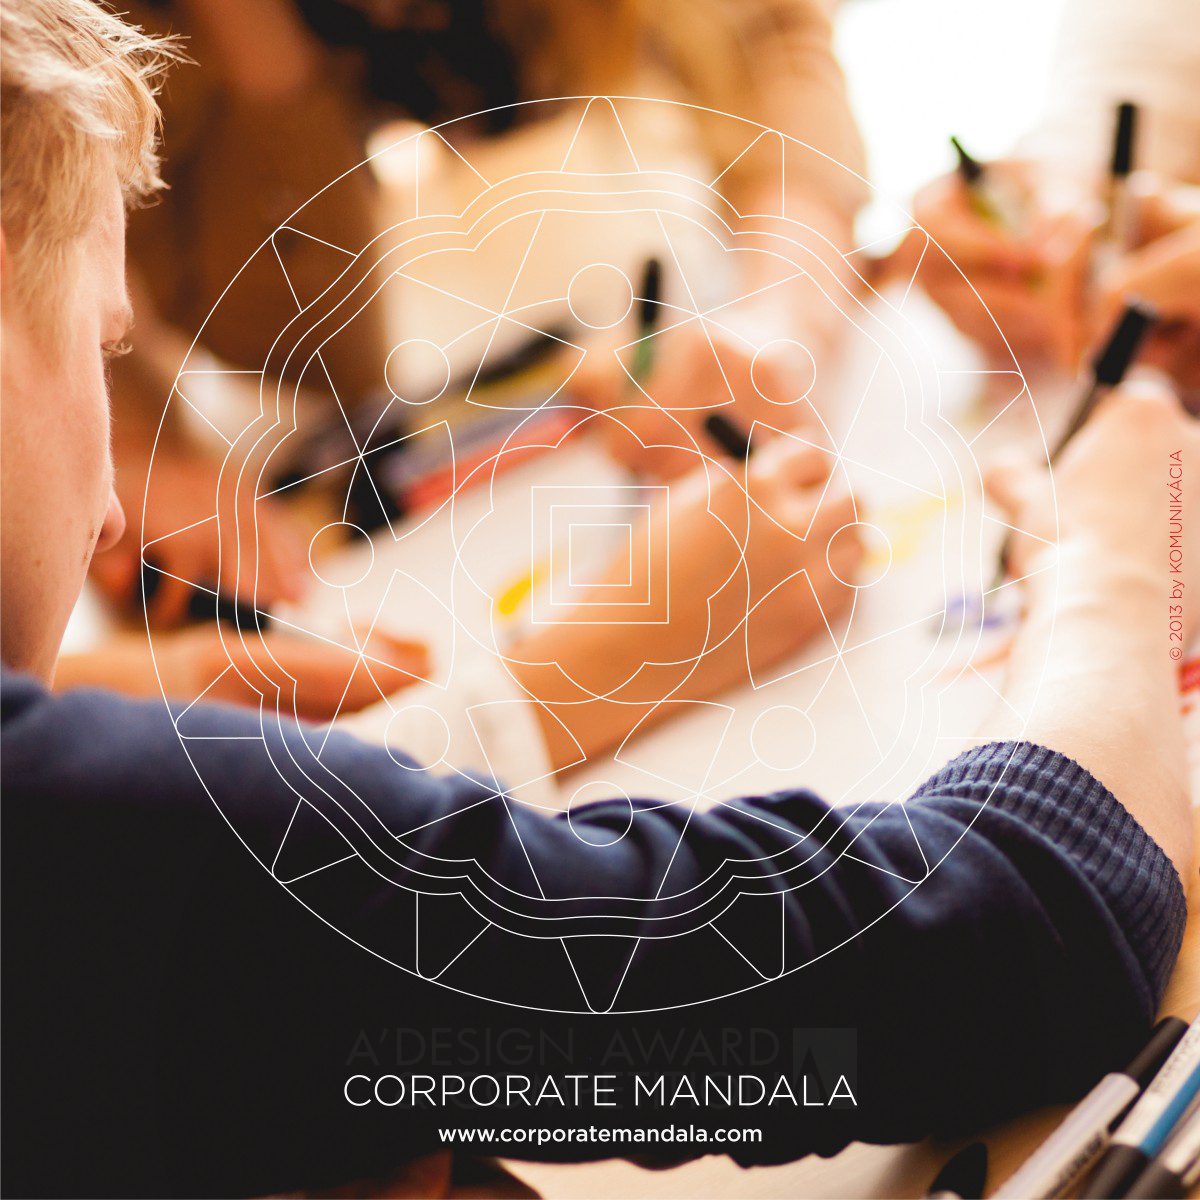 Corporate Mandala <b>educational and training tool